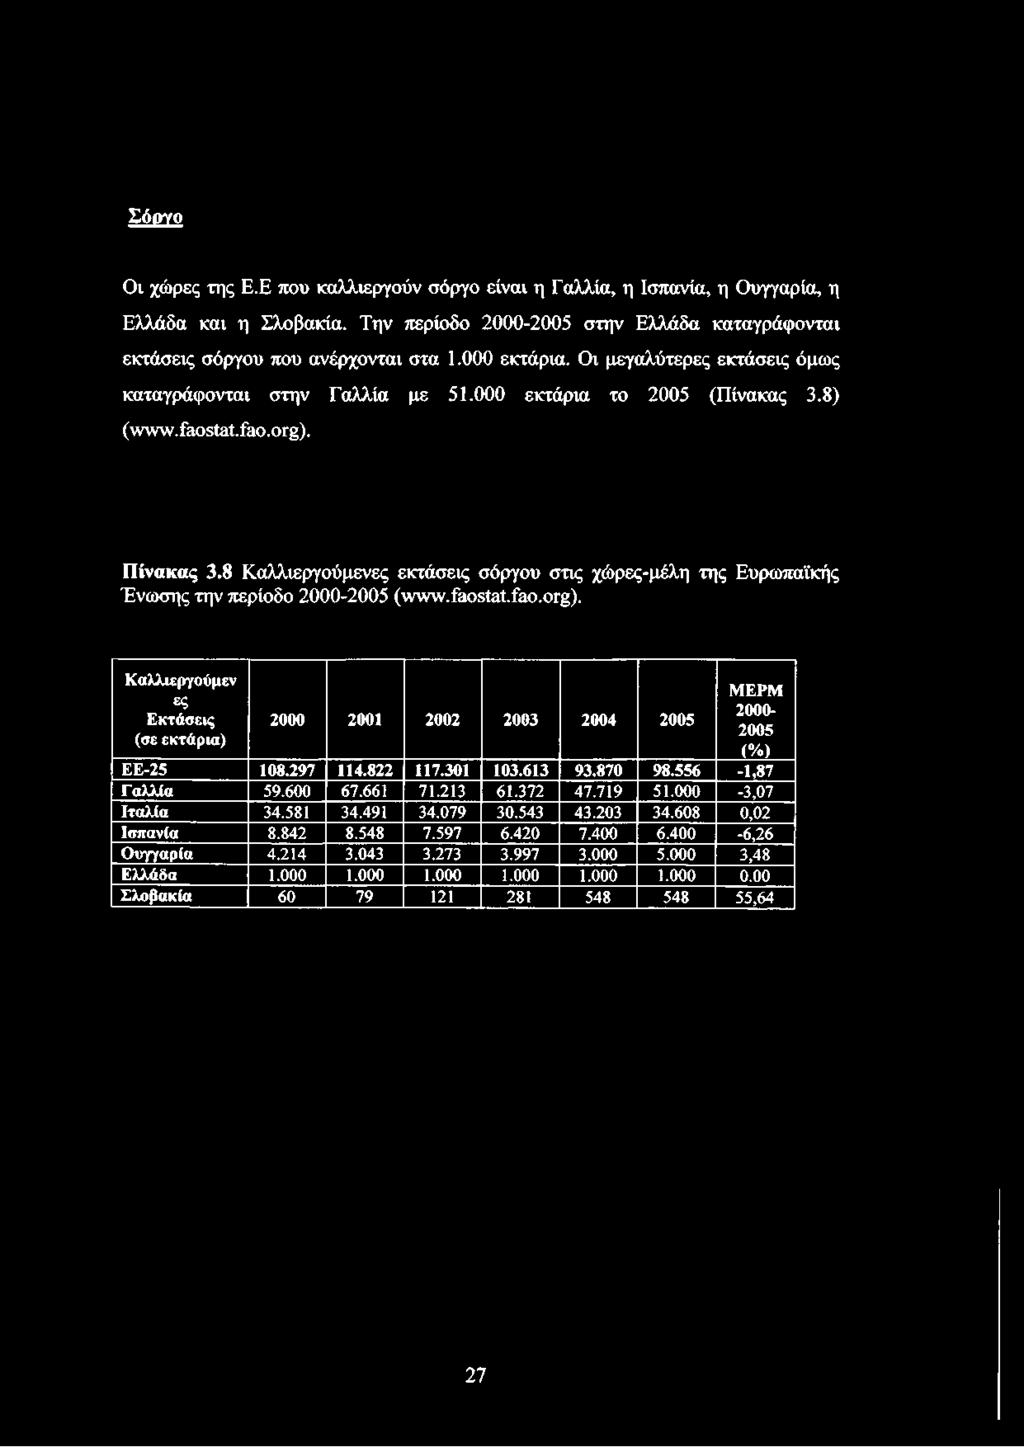 8 Καλλιεργούμενες εκτάσεις σόργου στις χώρες-μέλη της Ευρωπαϊκής Ένωσης την περίοδο 2000-2005 (www.faostat.fao.org).